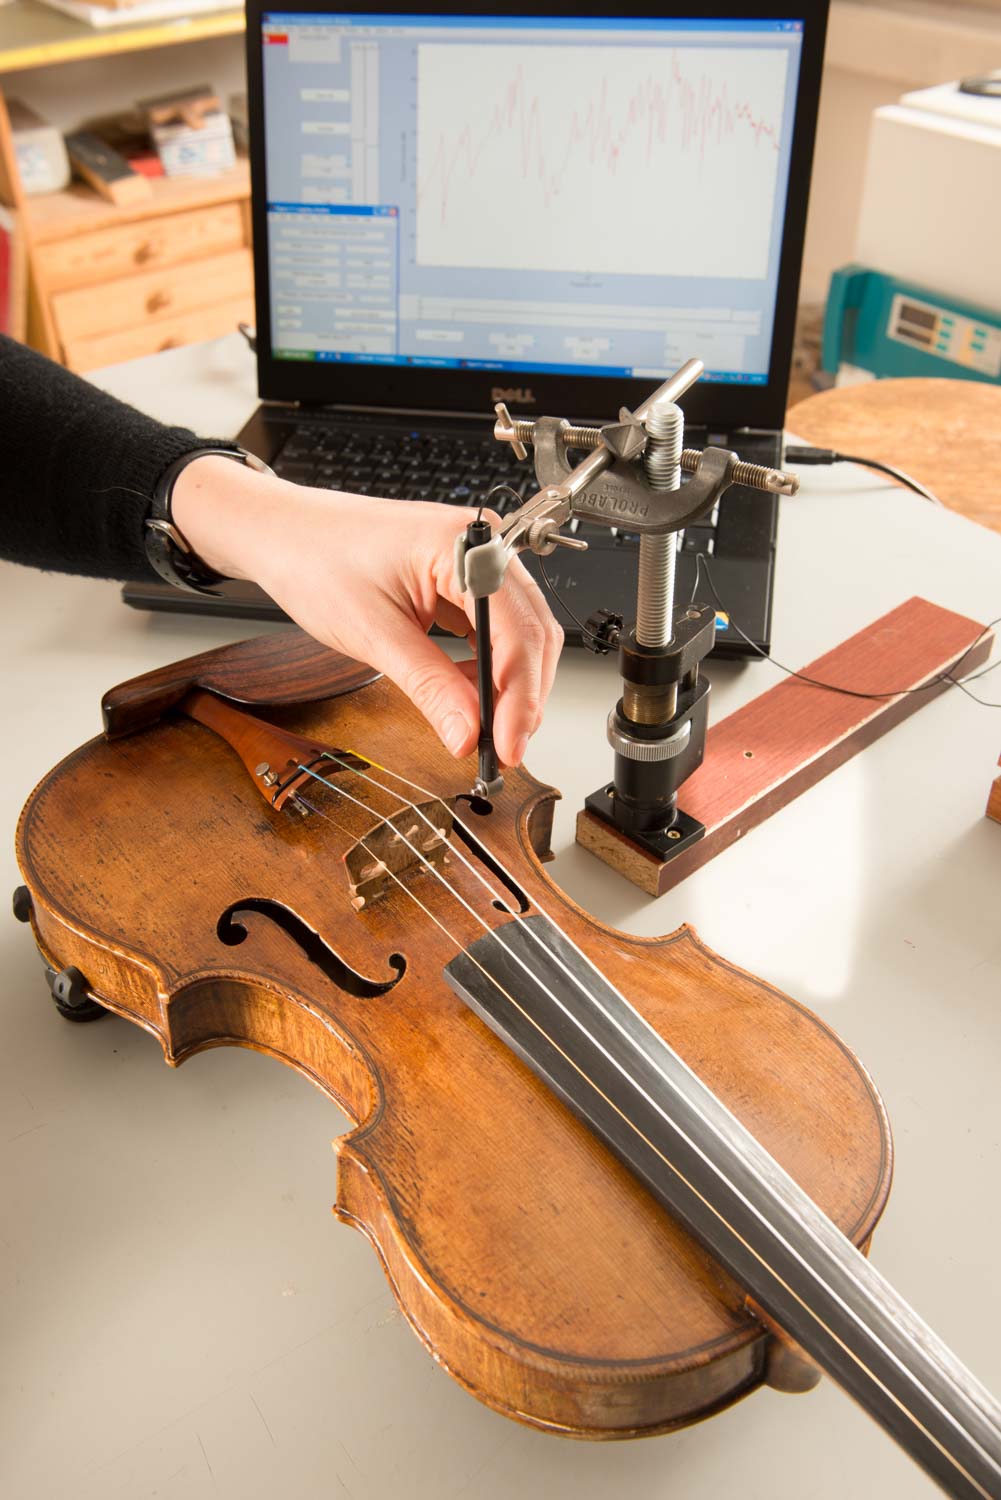 Des violons modernes font mieux que les mythiques Stradivarius